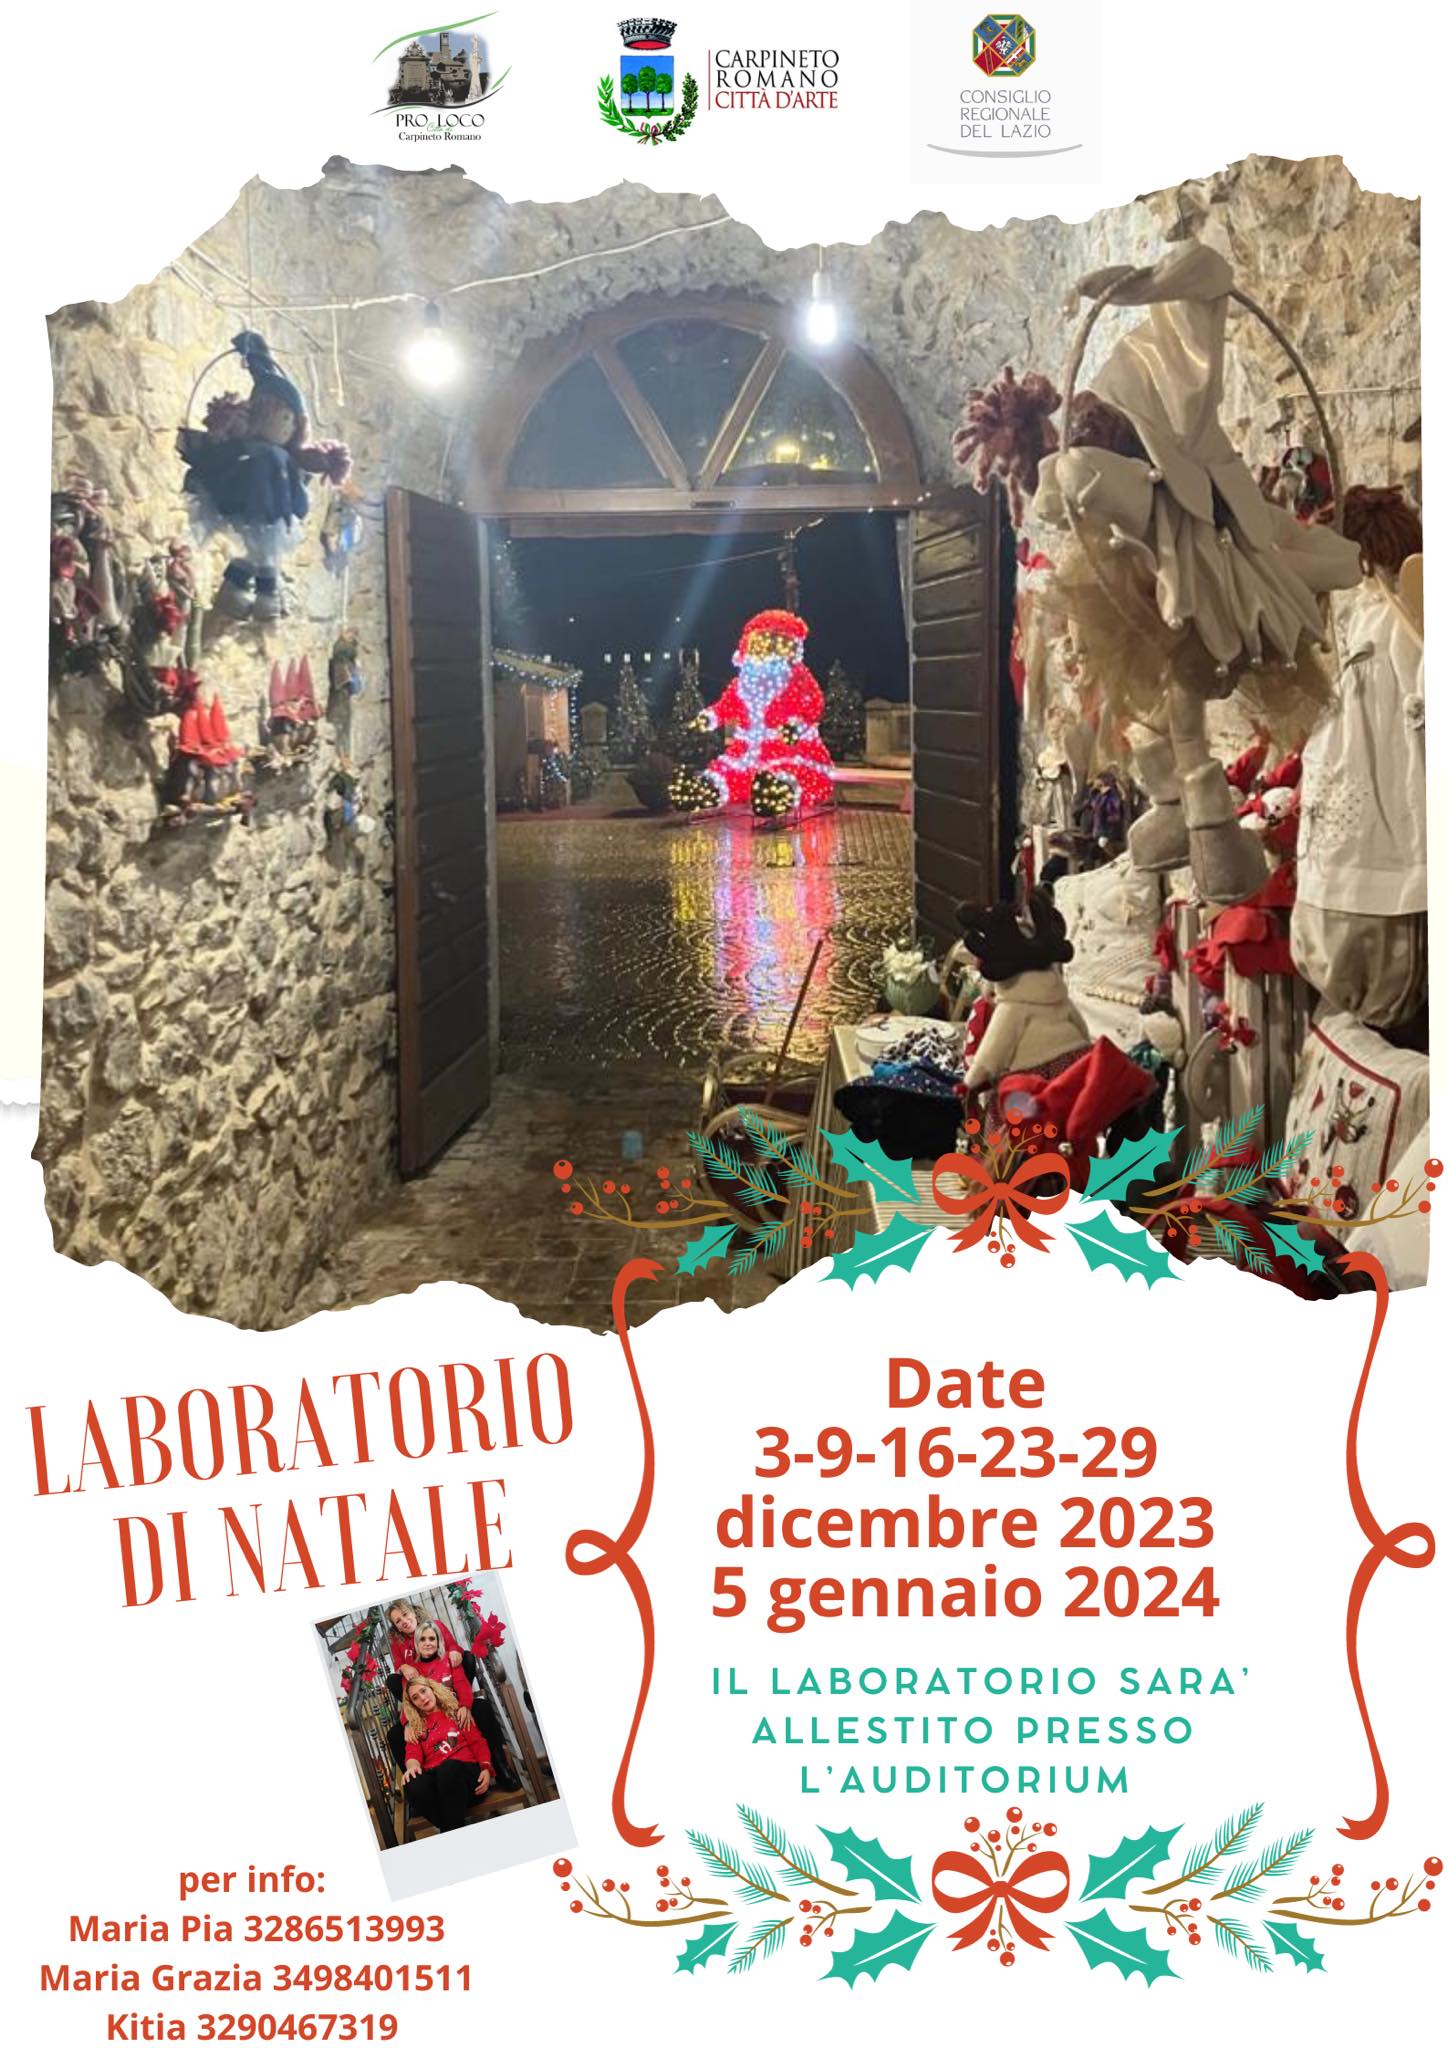 Carpineto Romano: Laboratori di Natale @ Comune di Carpineto Romano